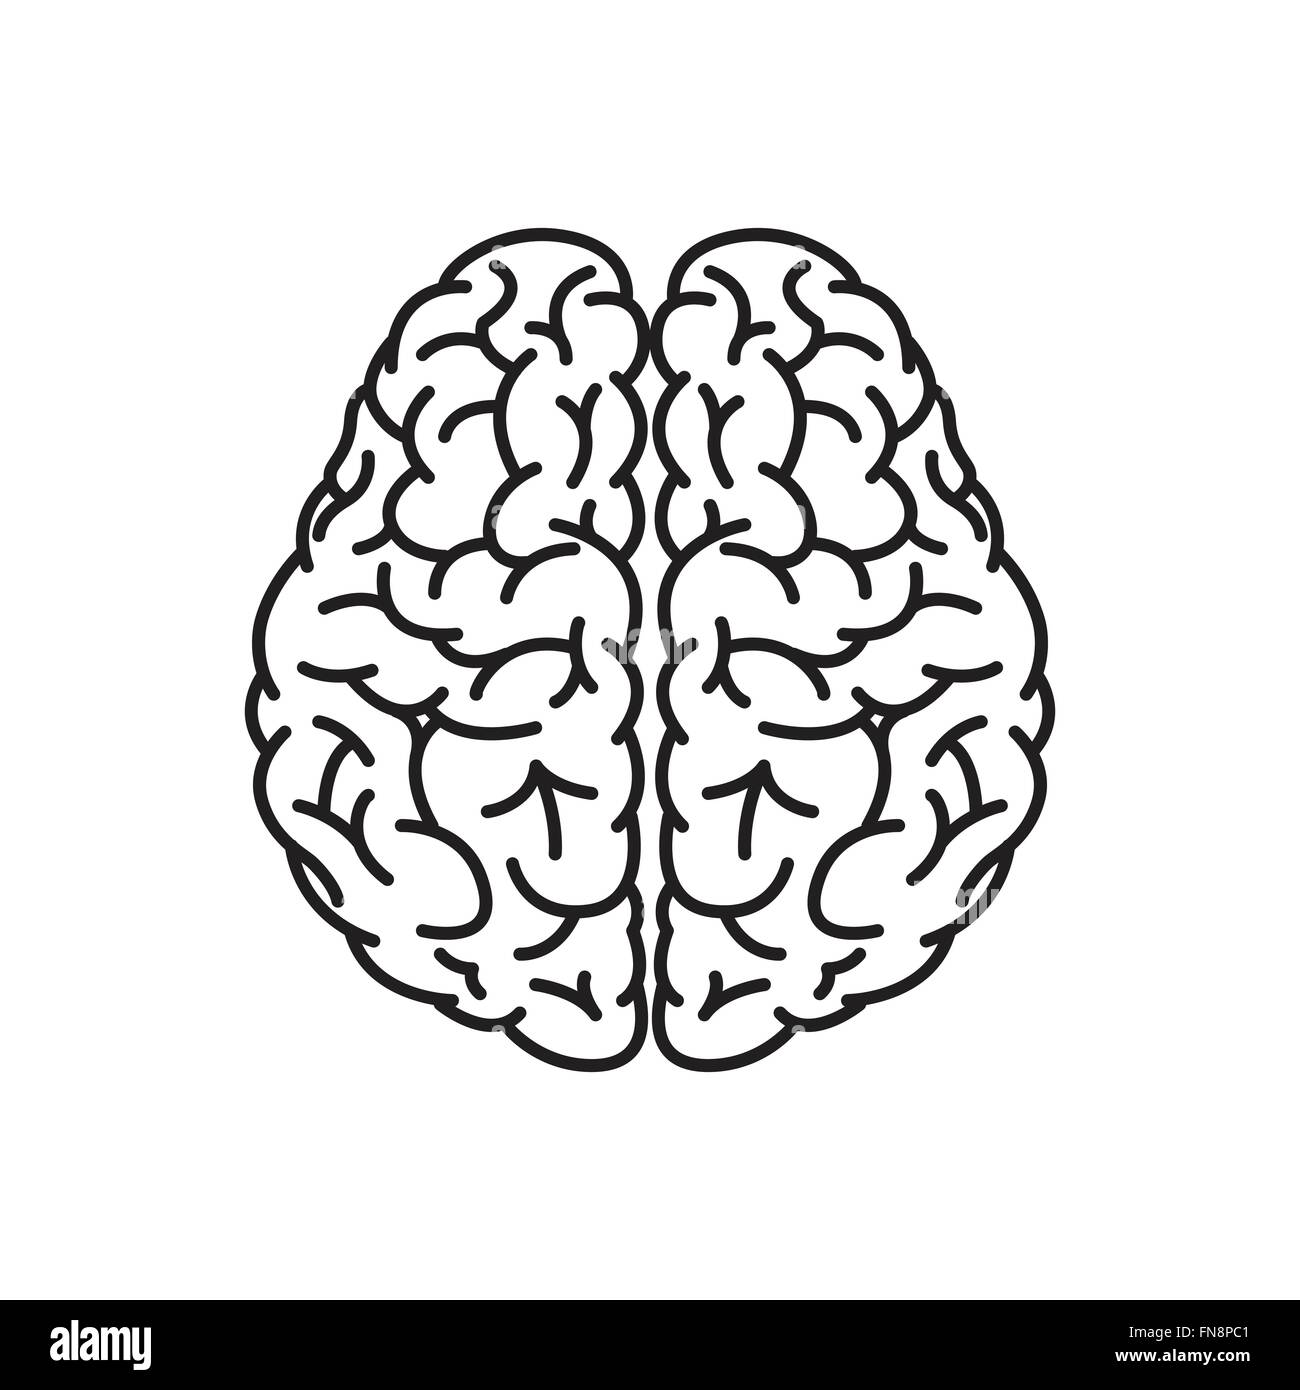 Vektor-Illustration des menschlichen Gehirns Gliederung von Draufsicht Stock Vektor